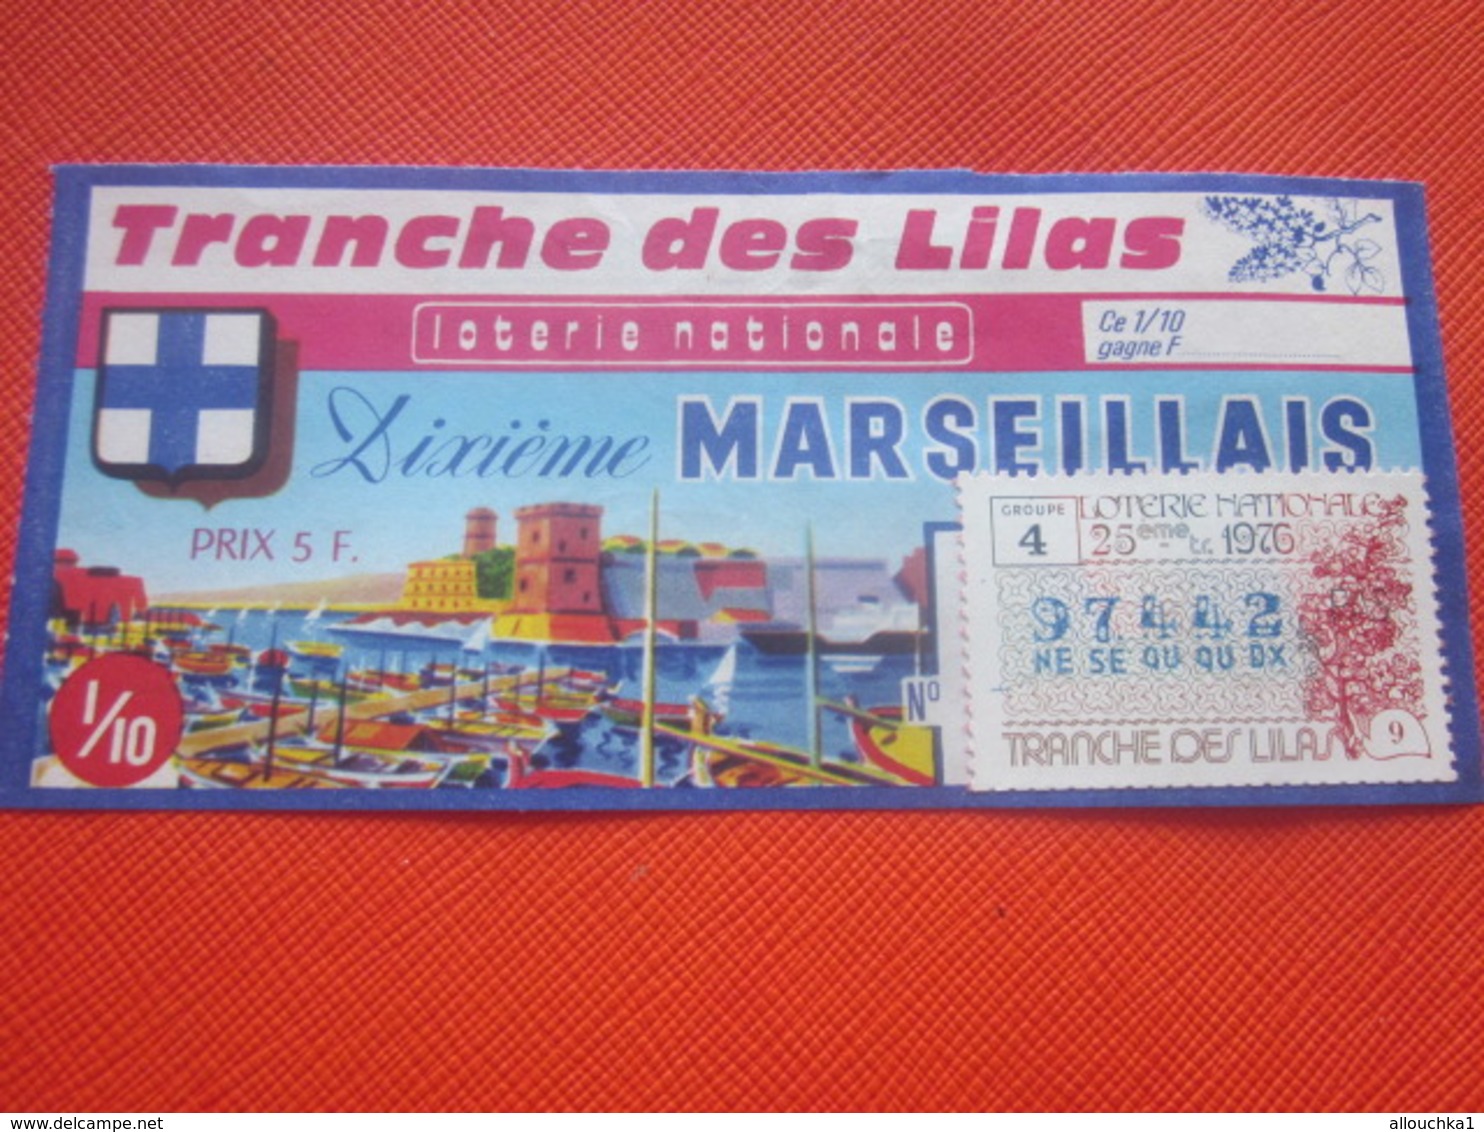 FORT ST NICOLAS-PORT MARSEILLE-TR-LILAS-10é MARSEILLAIS-1976-Billet De Loterie Nationale+VIGNETTE IMPRIMÉ TAILLE DOUCE - Billets De Loterie